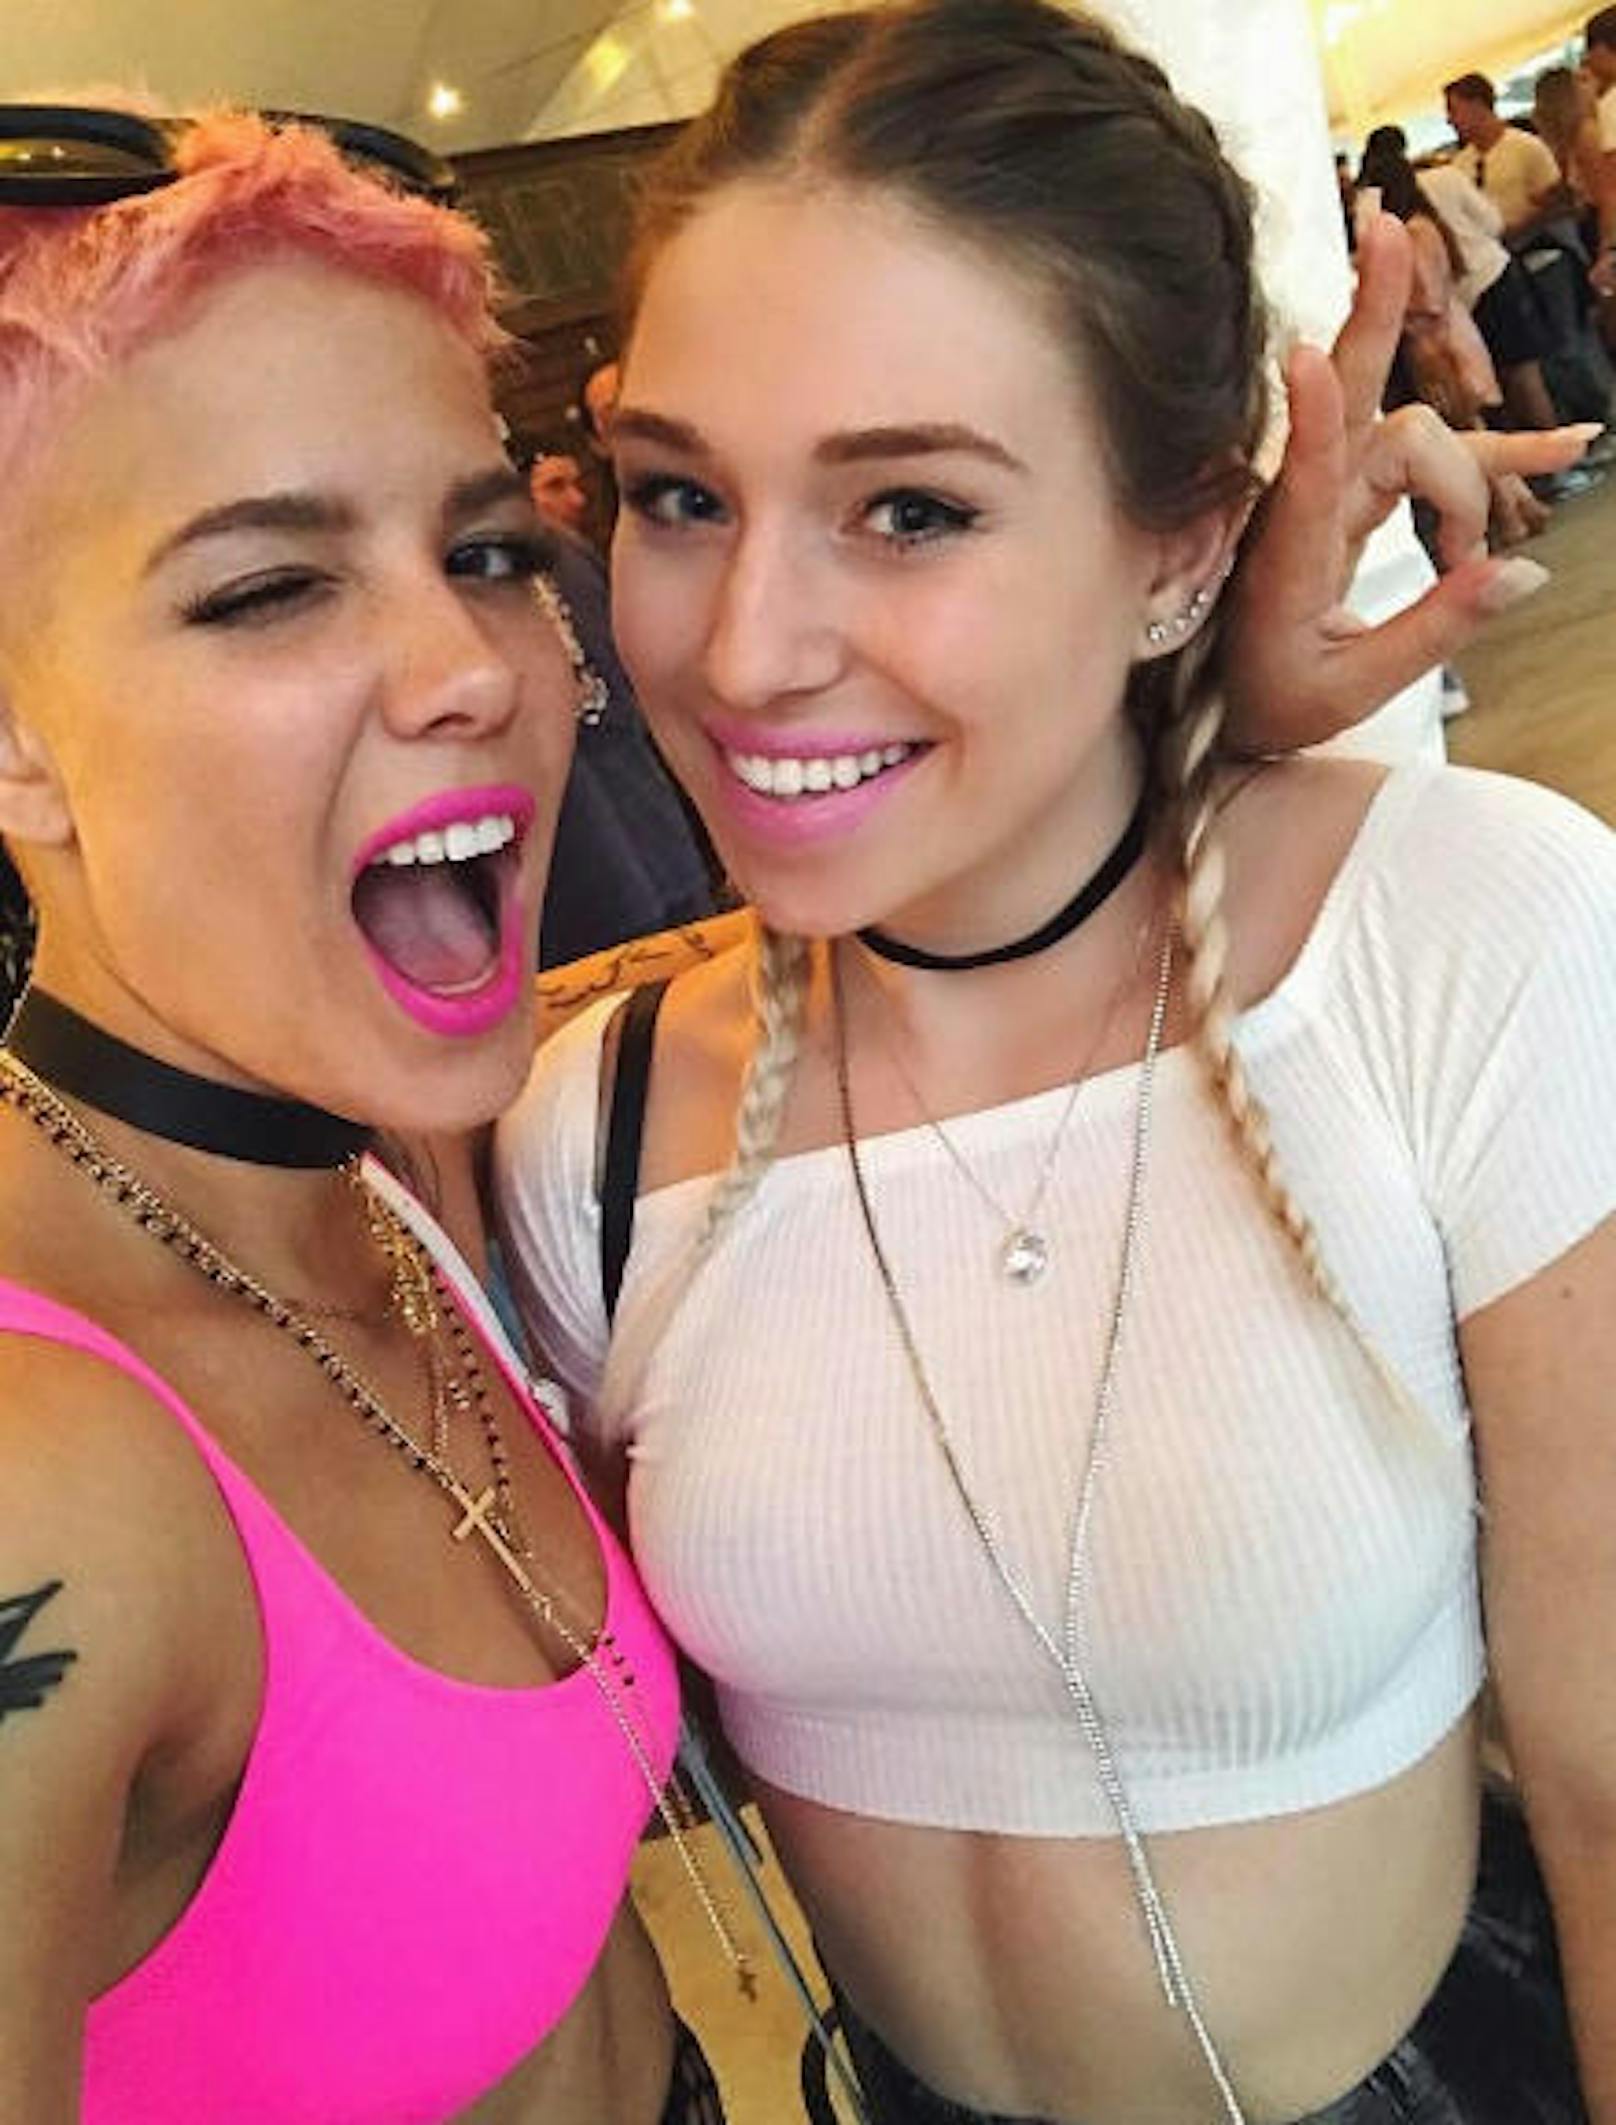 15.04.2017: Die deutsche Bloggerin Bibi lässt sich heuer das Coachella-Festival in Kalifornien nicht entgehen. Auf Instagram postete sie ein Selfie mit der Popsängerin Halsey.